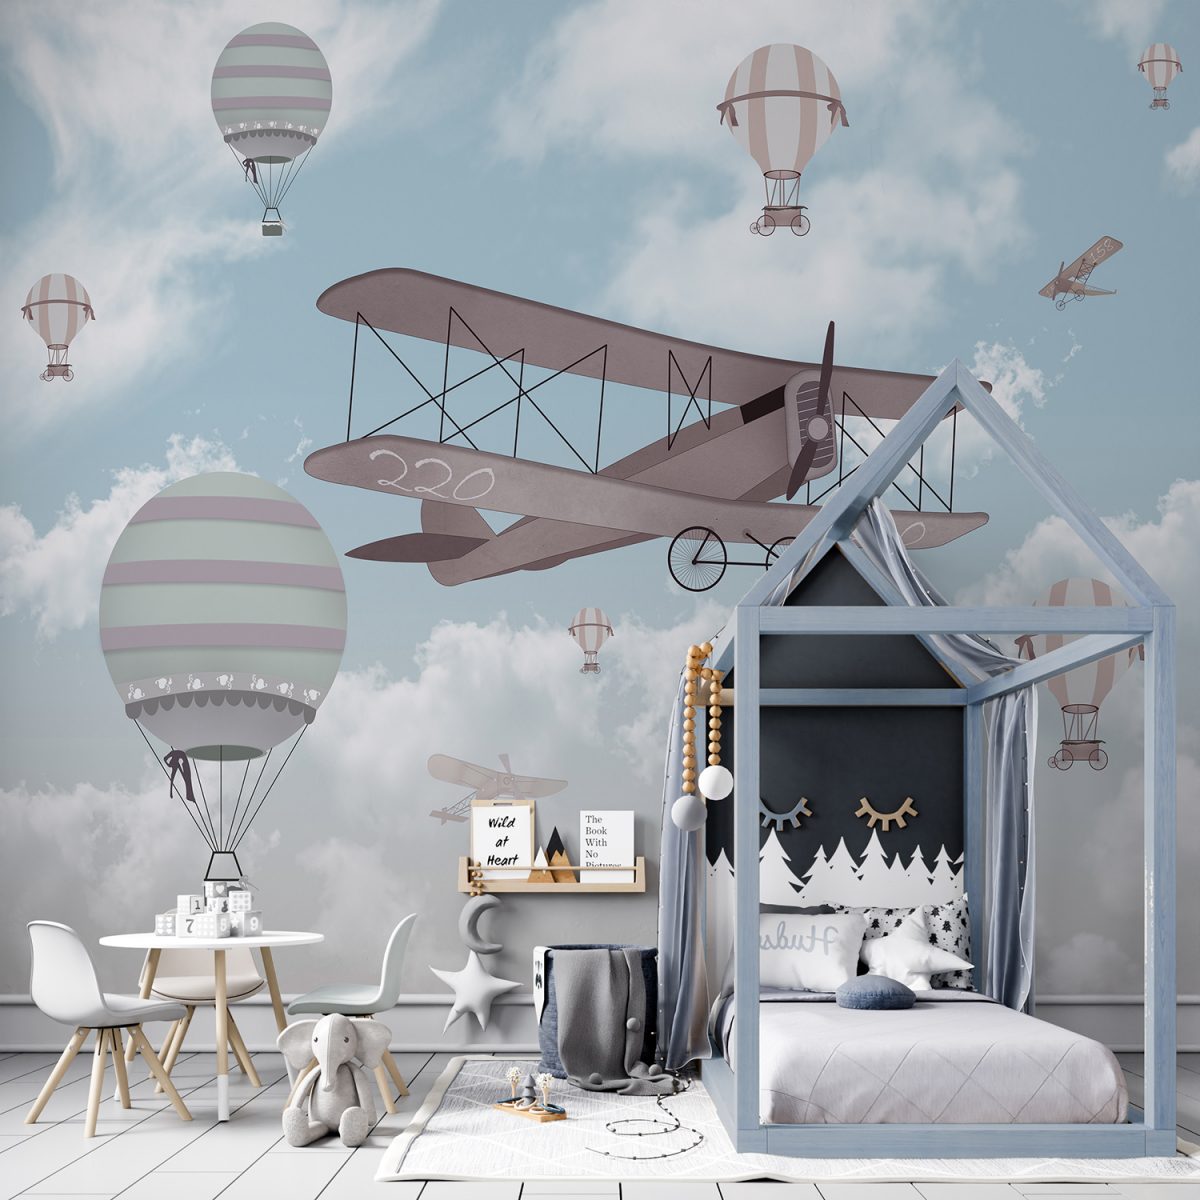 Air Plane Hot Air Balloons Boy Room Wallpaper Mural